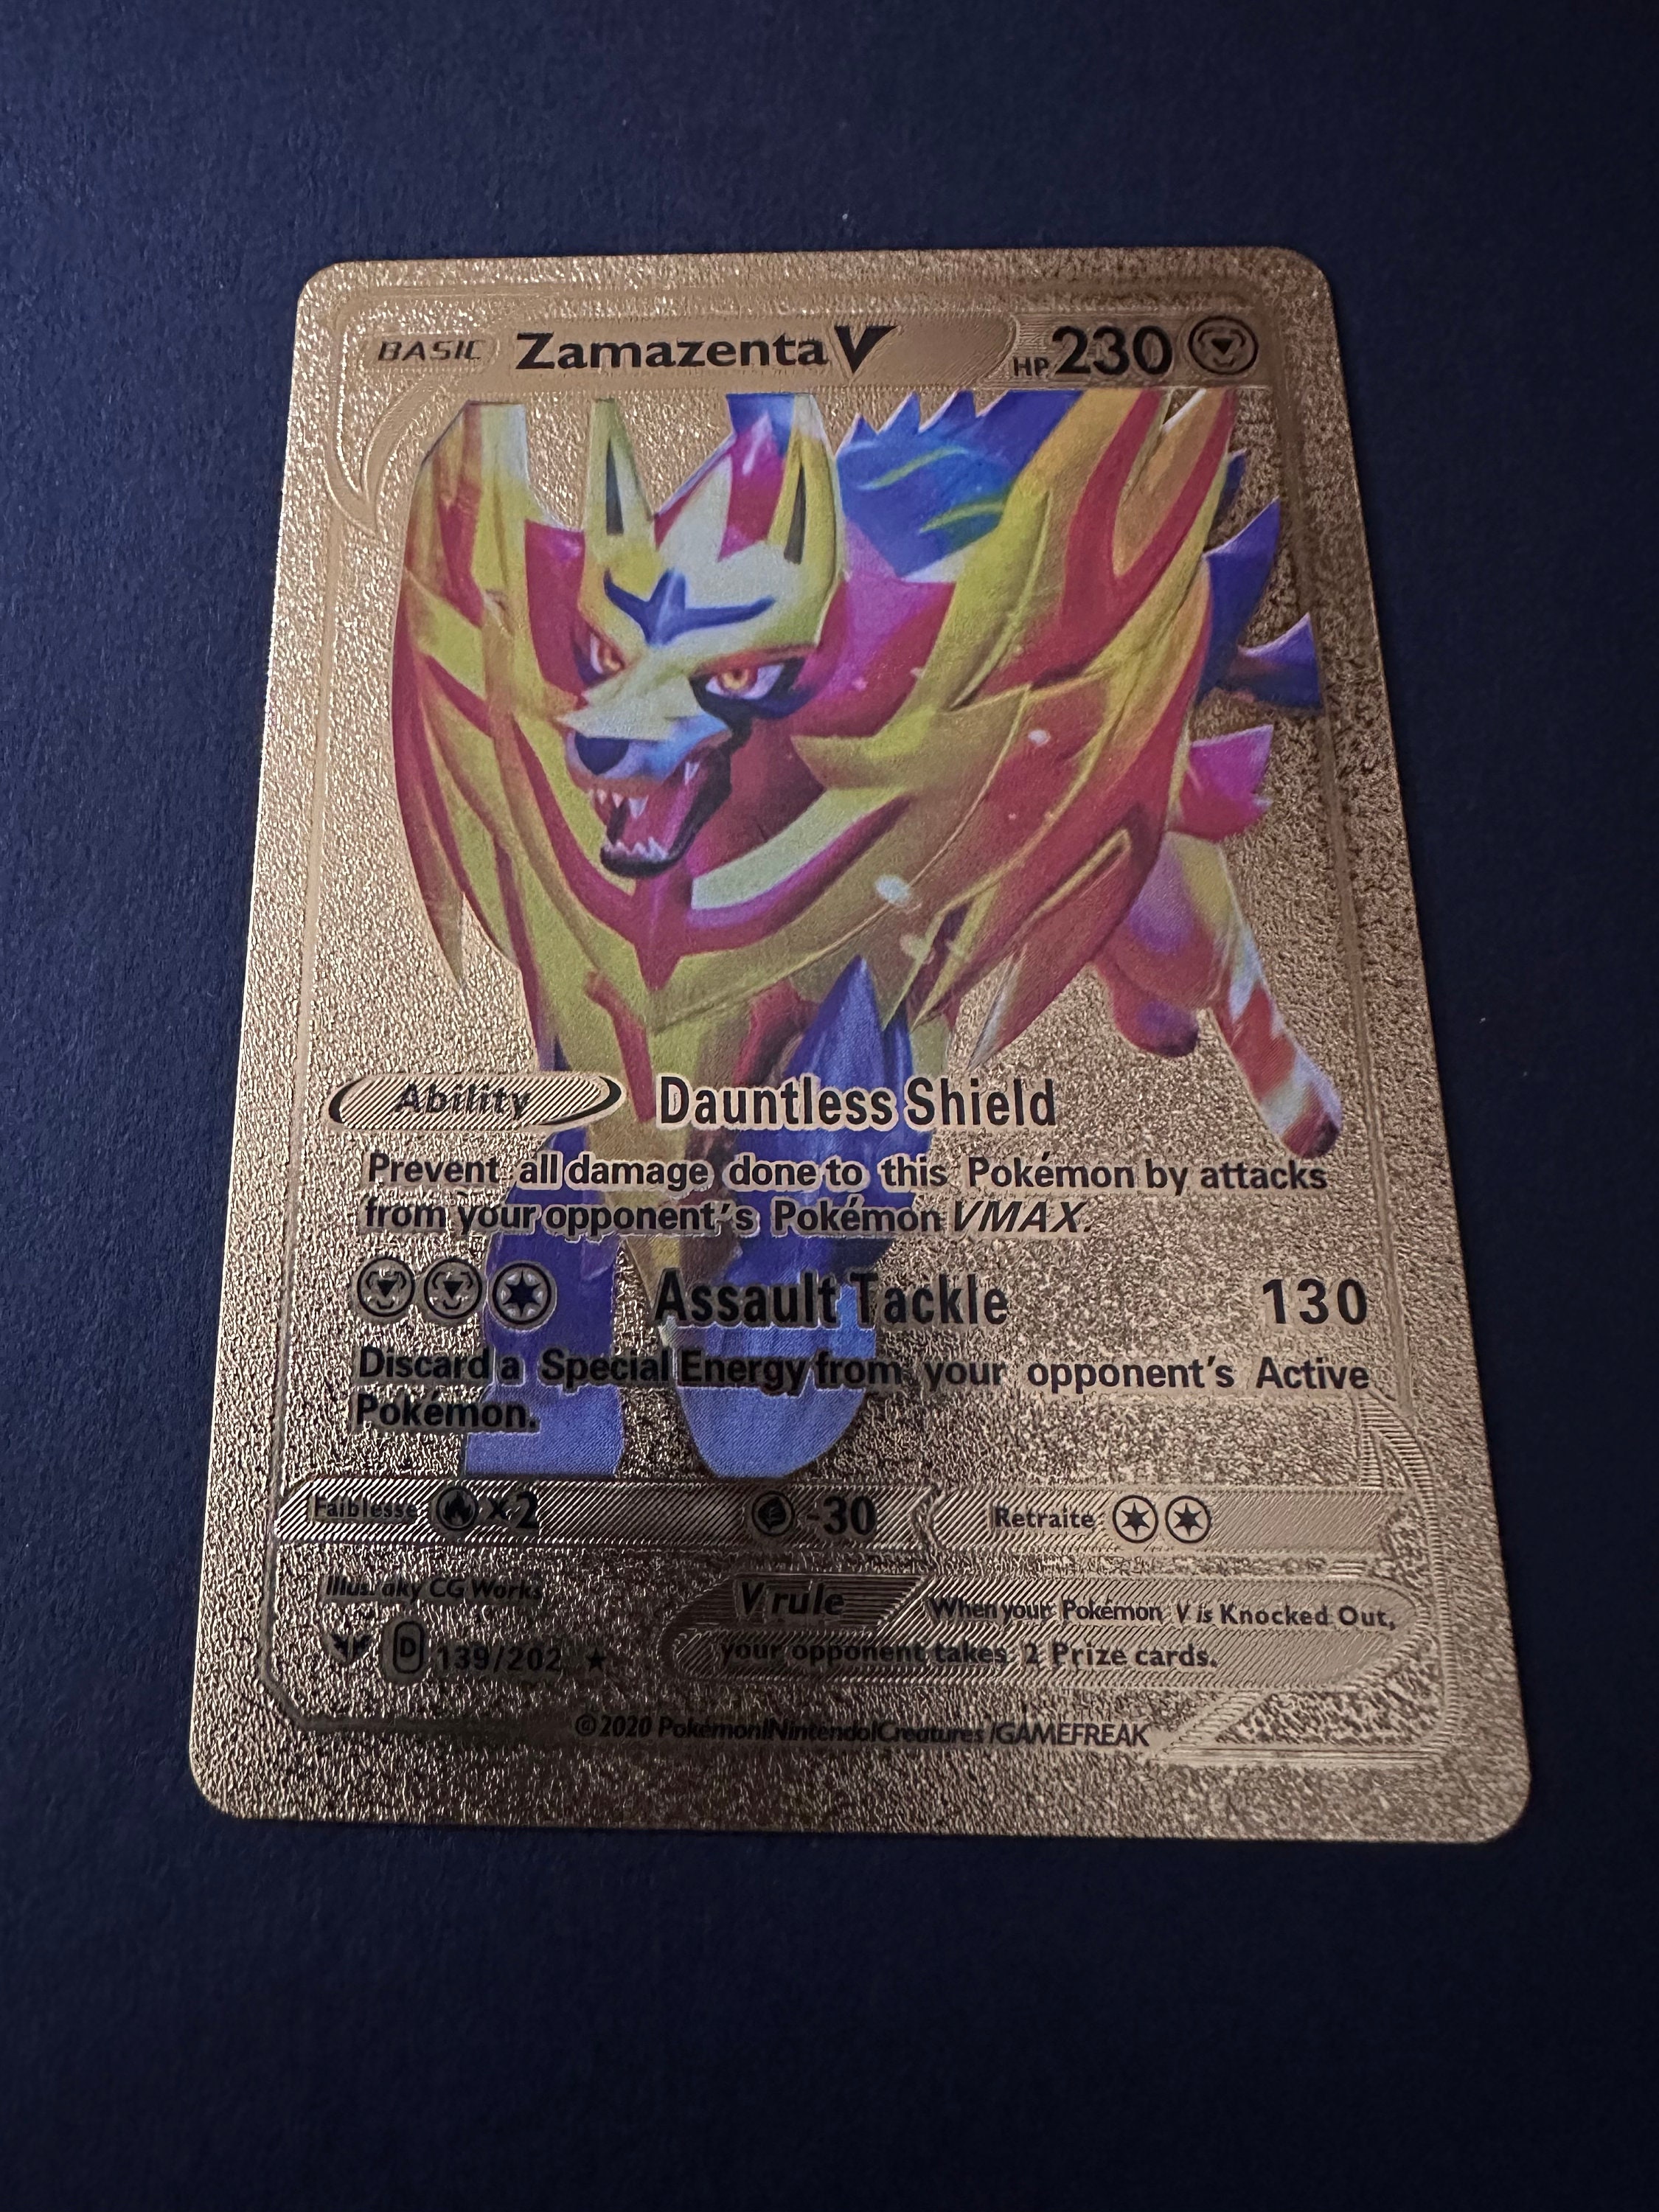 Zacian V Plastic Black UV Printed Pokemon Card